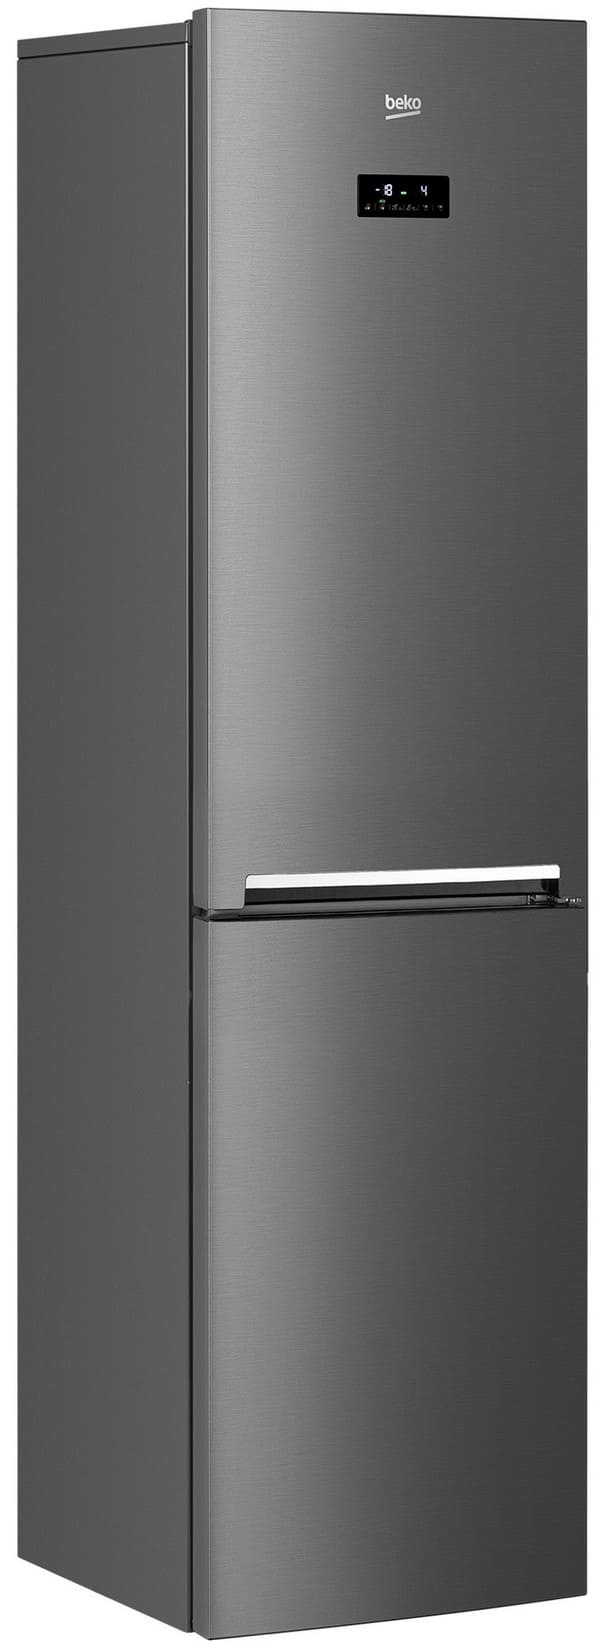 Beko RCNK 335E20 VW Refrigerator